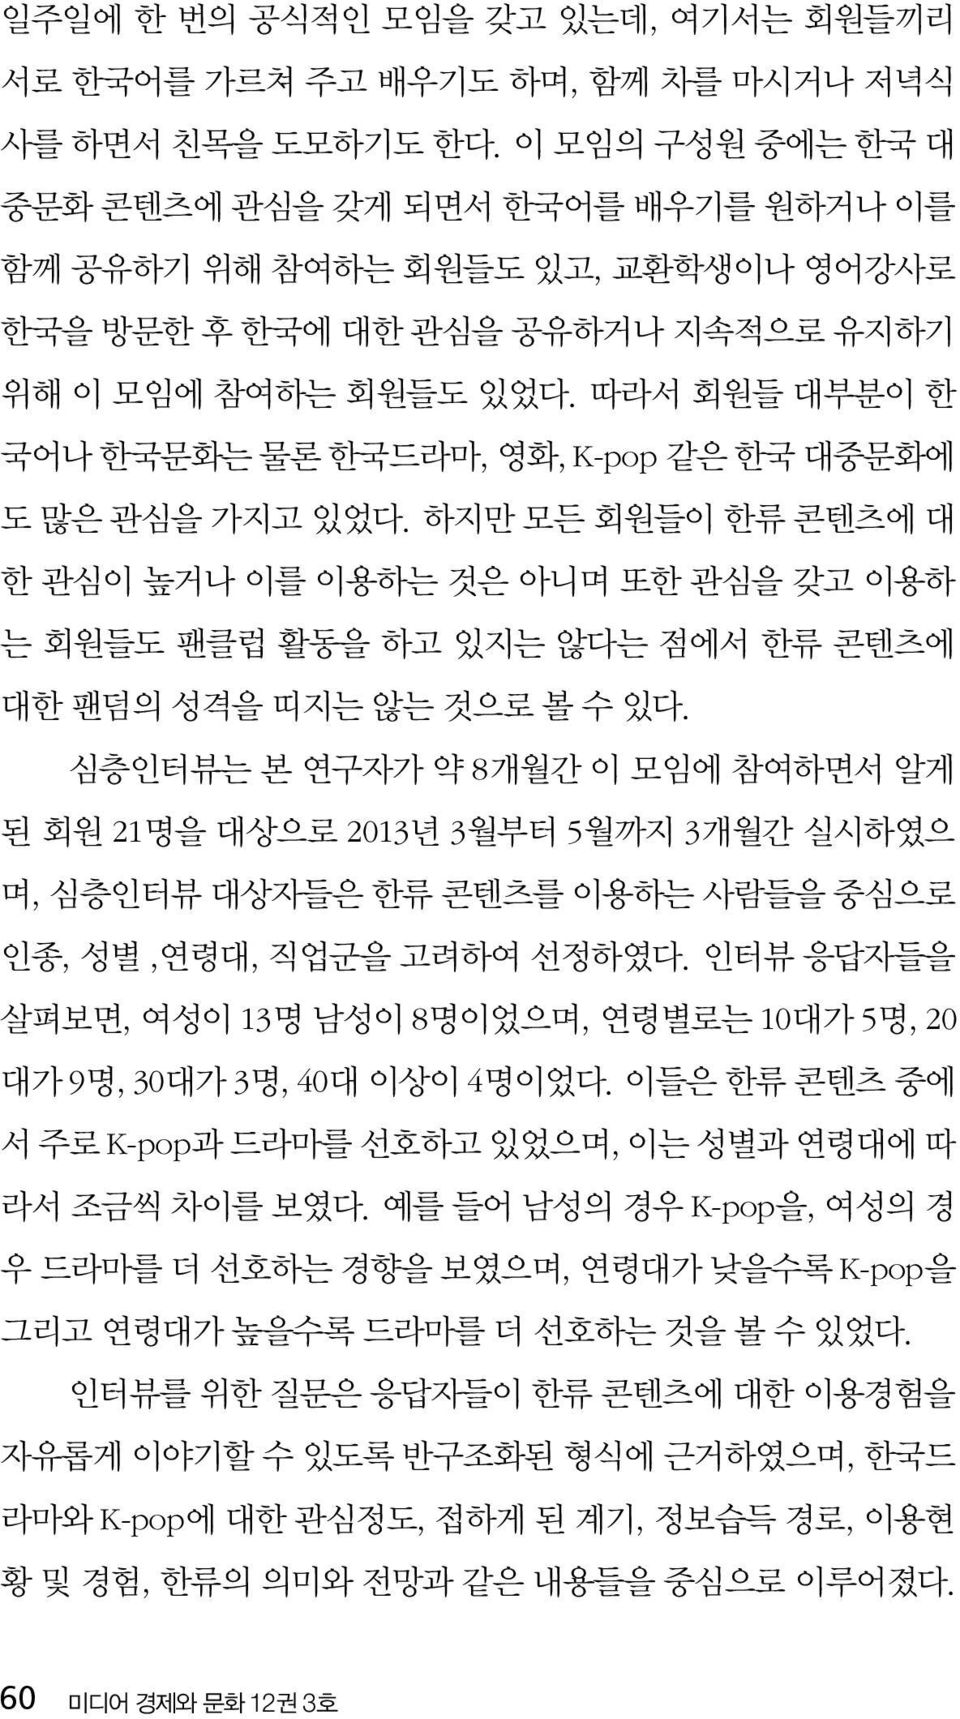 따라서 회원들 대부분이 한 국어나 한국문화는 물론 한국드라마, 영화, K-pop 같은 한국 대중문화에 도 많은 관심을 가지고 있었다.